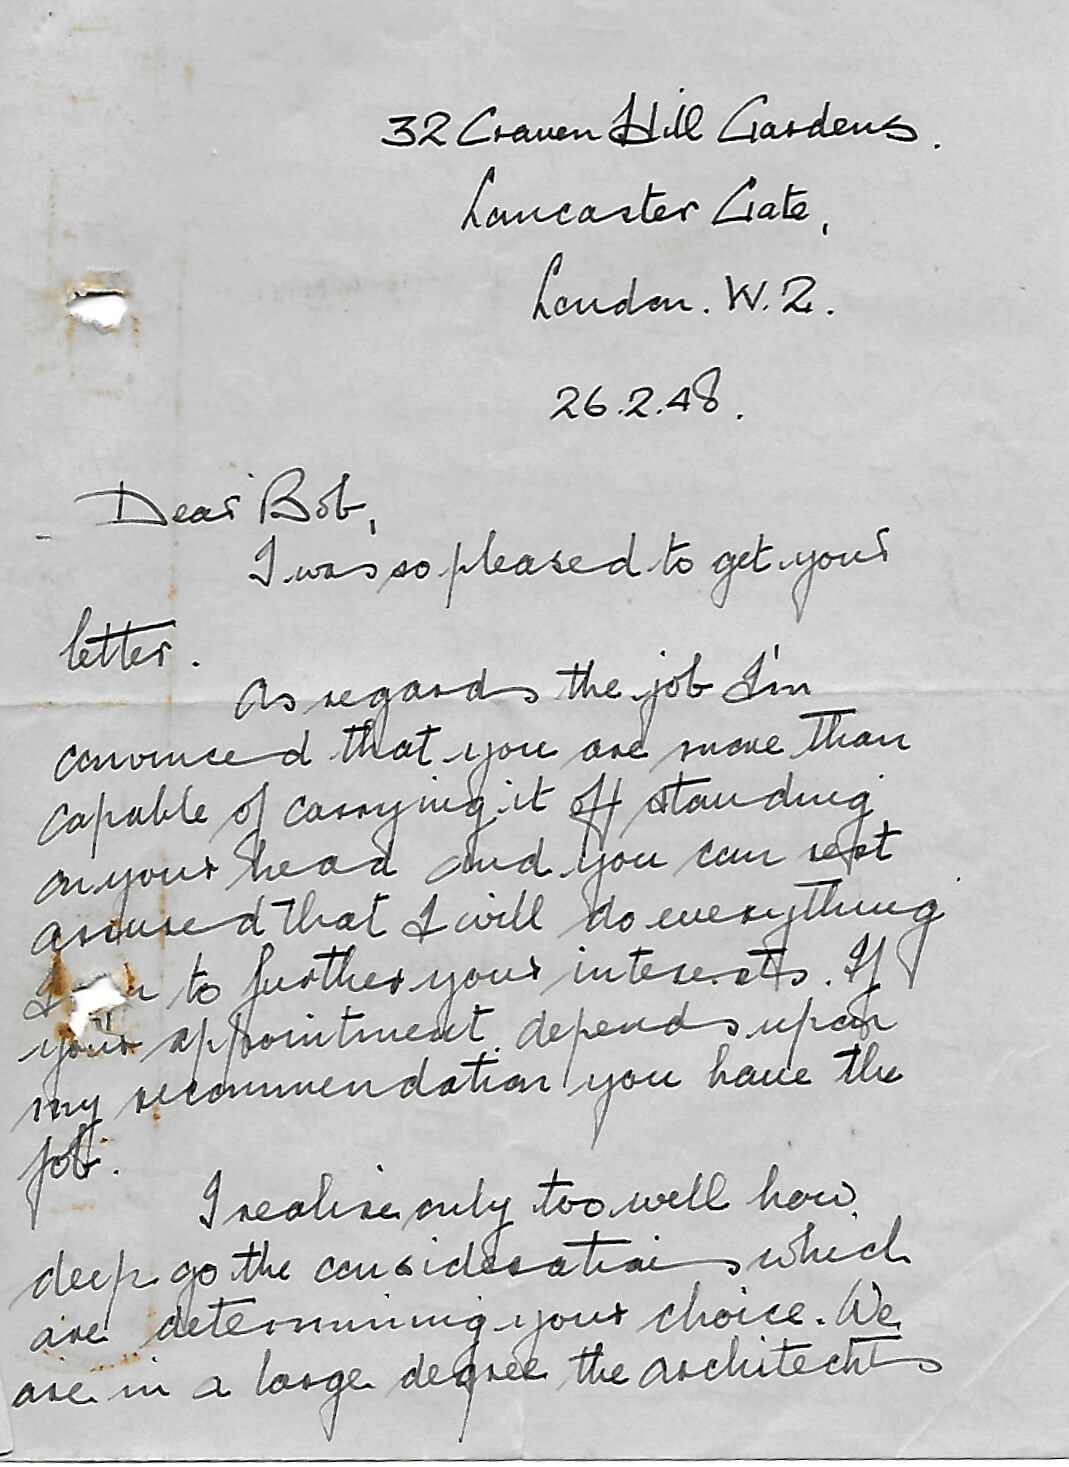 26 Feb 1948 - E D Kassell letter